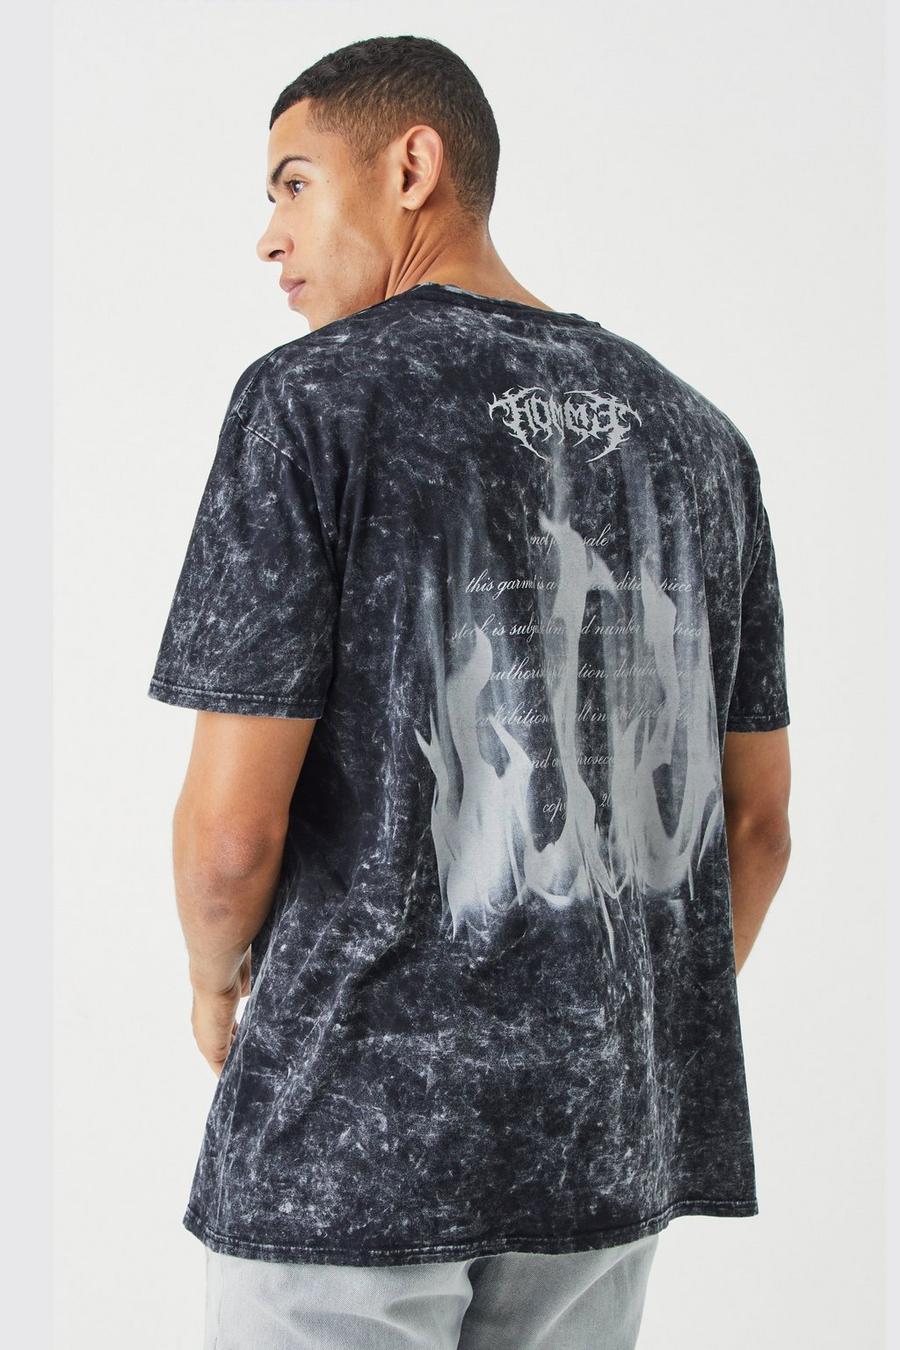 Oversized Acid Wash Graphic T-shirt